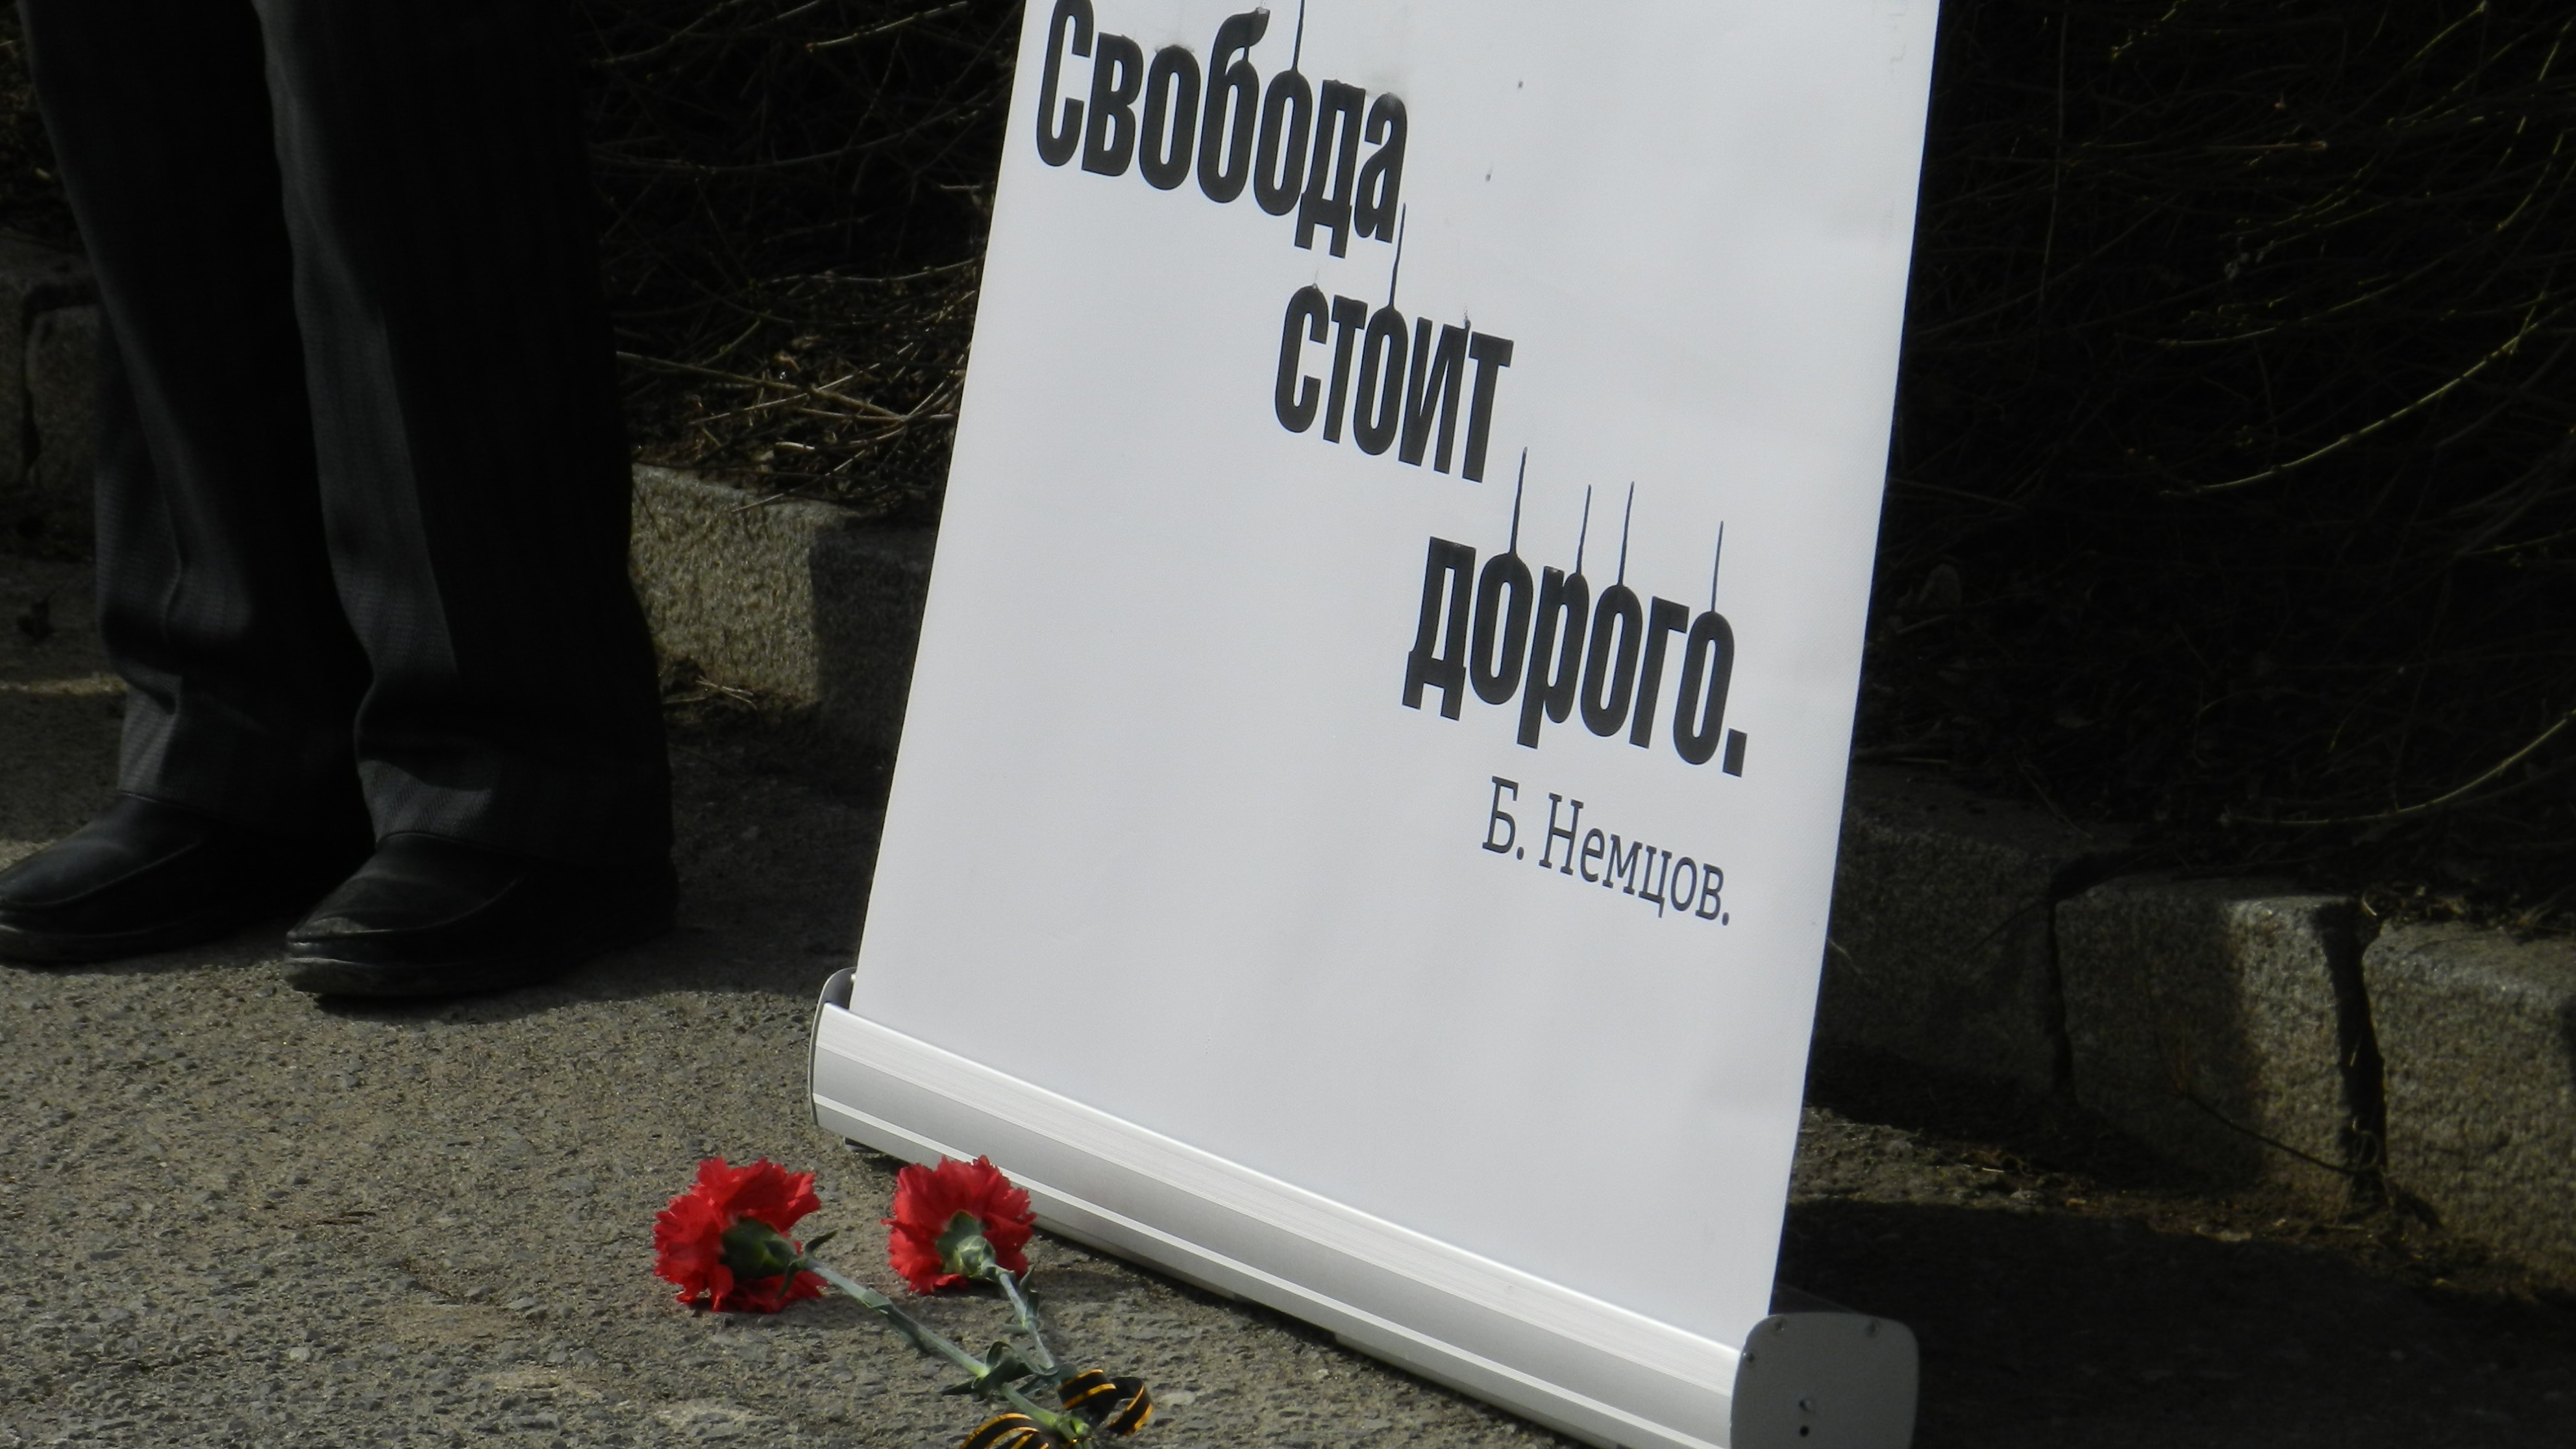 Участники митинга в Волгограде почтили память Бориса Немцова. 29 февраля 2020 года. Фото Татьяны Филимоновой для "Кавказского узла"